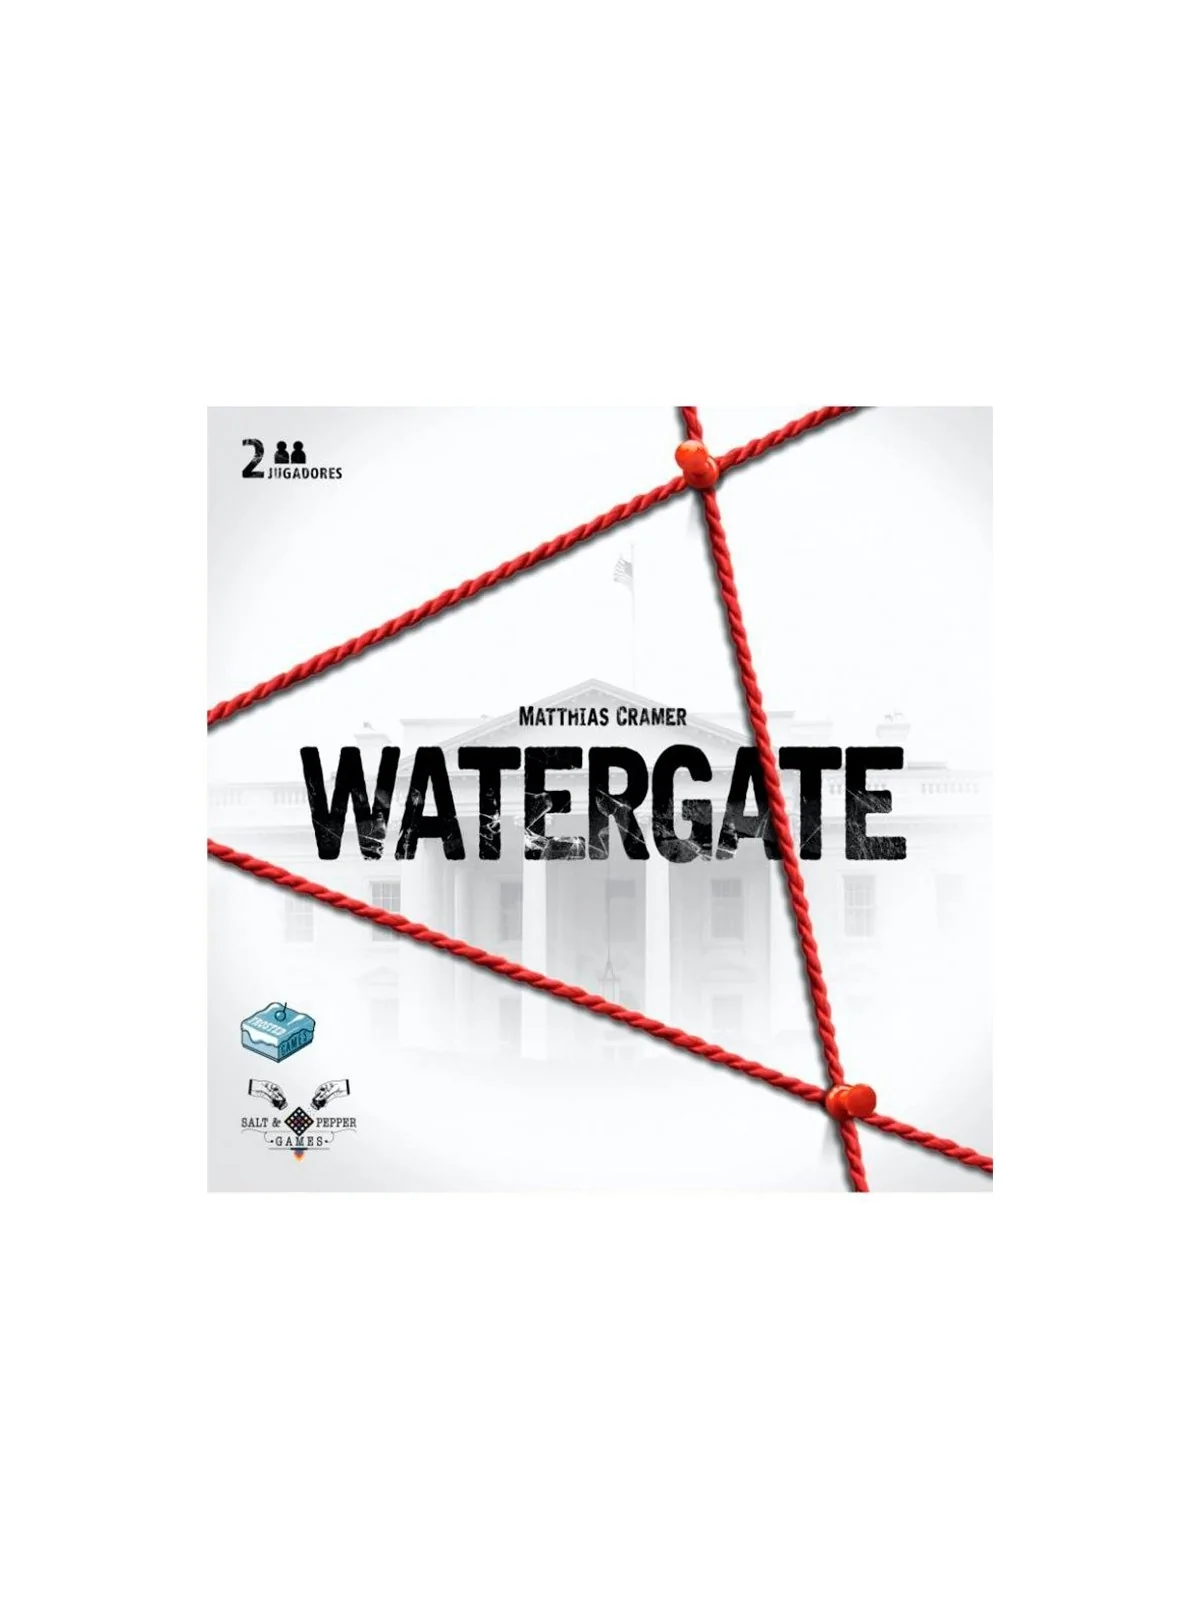 Comprar Watergate Segunda Edición barato al mejor precio 31,50 € de Sa